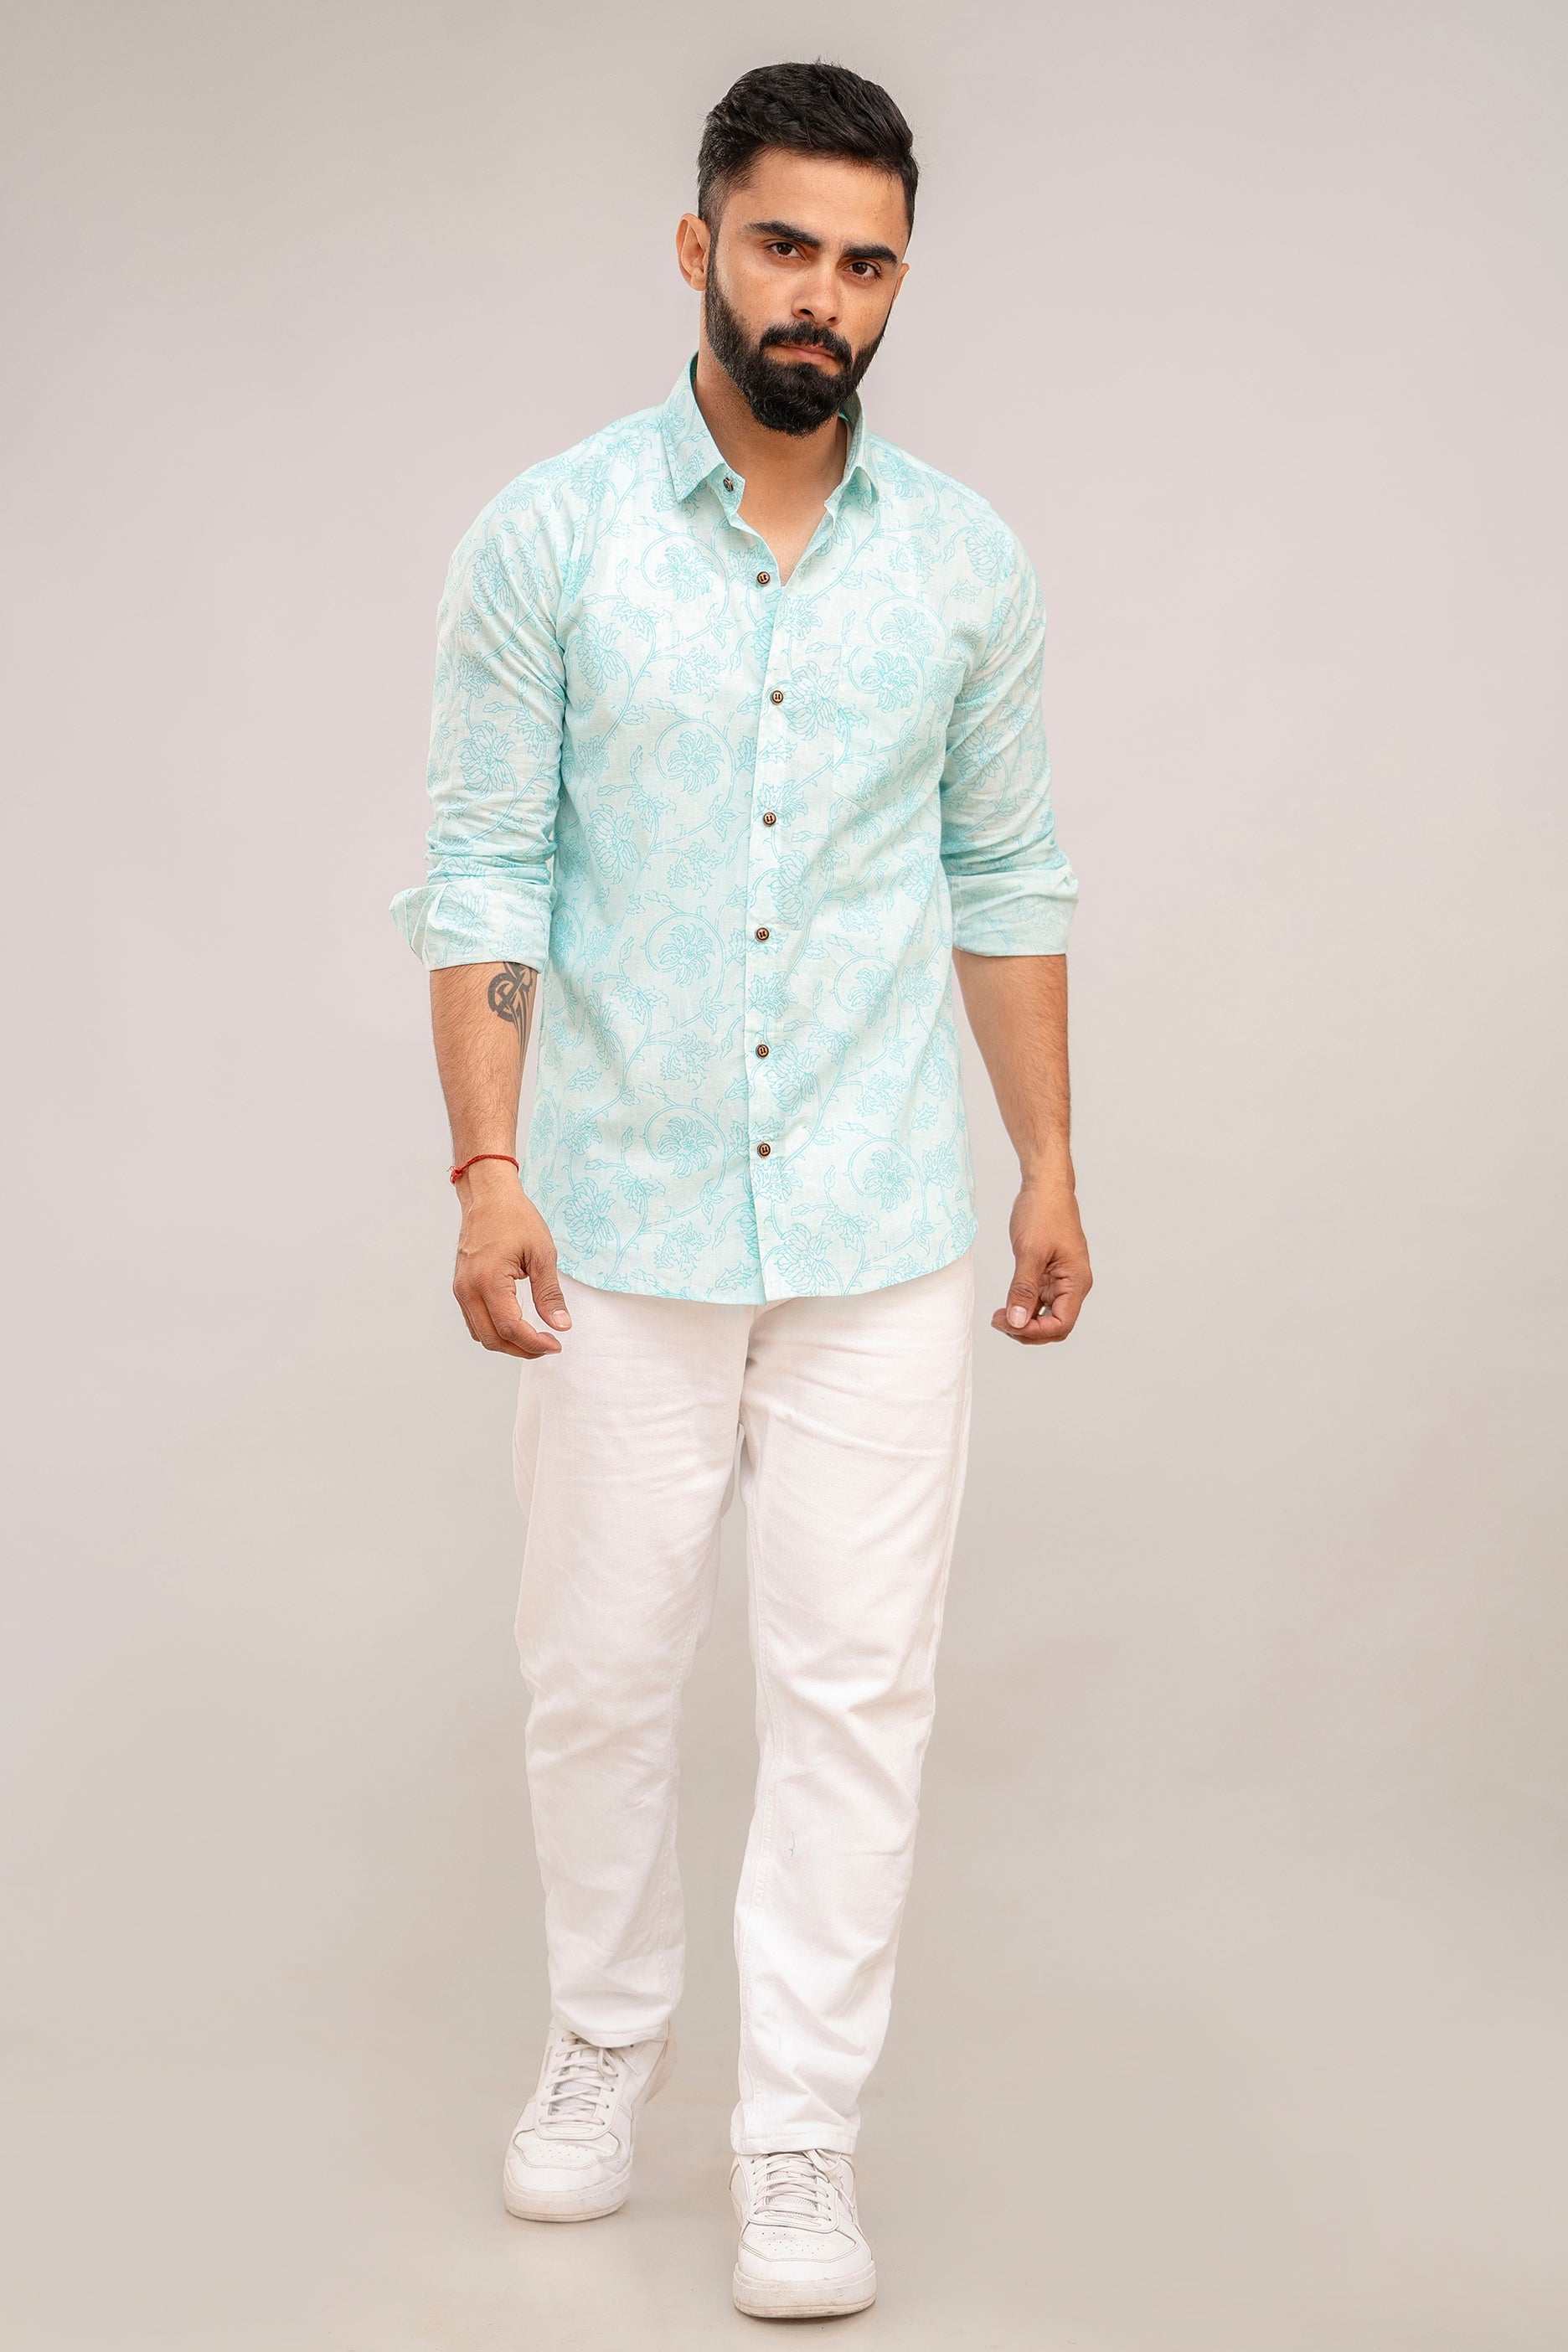 Blue Floral Jaipuri Cotton Printed Shirt